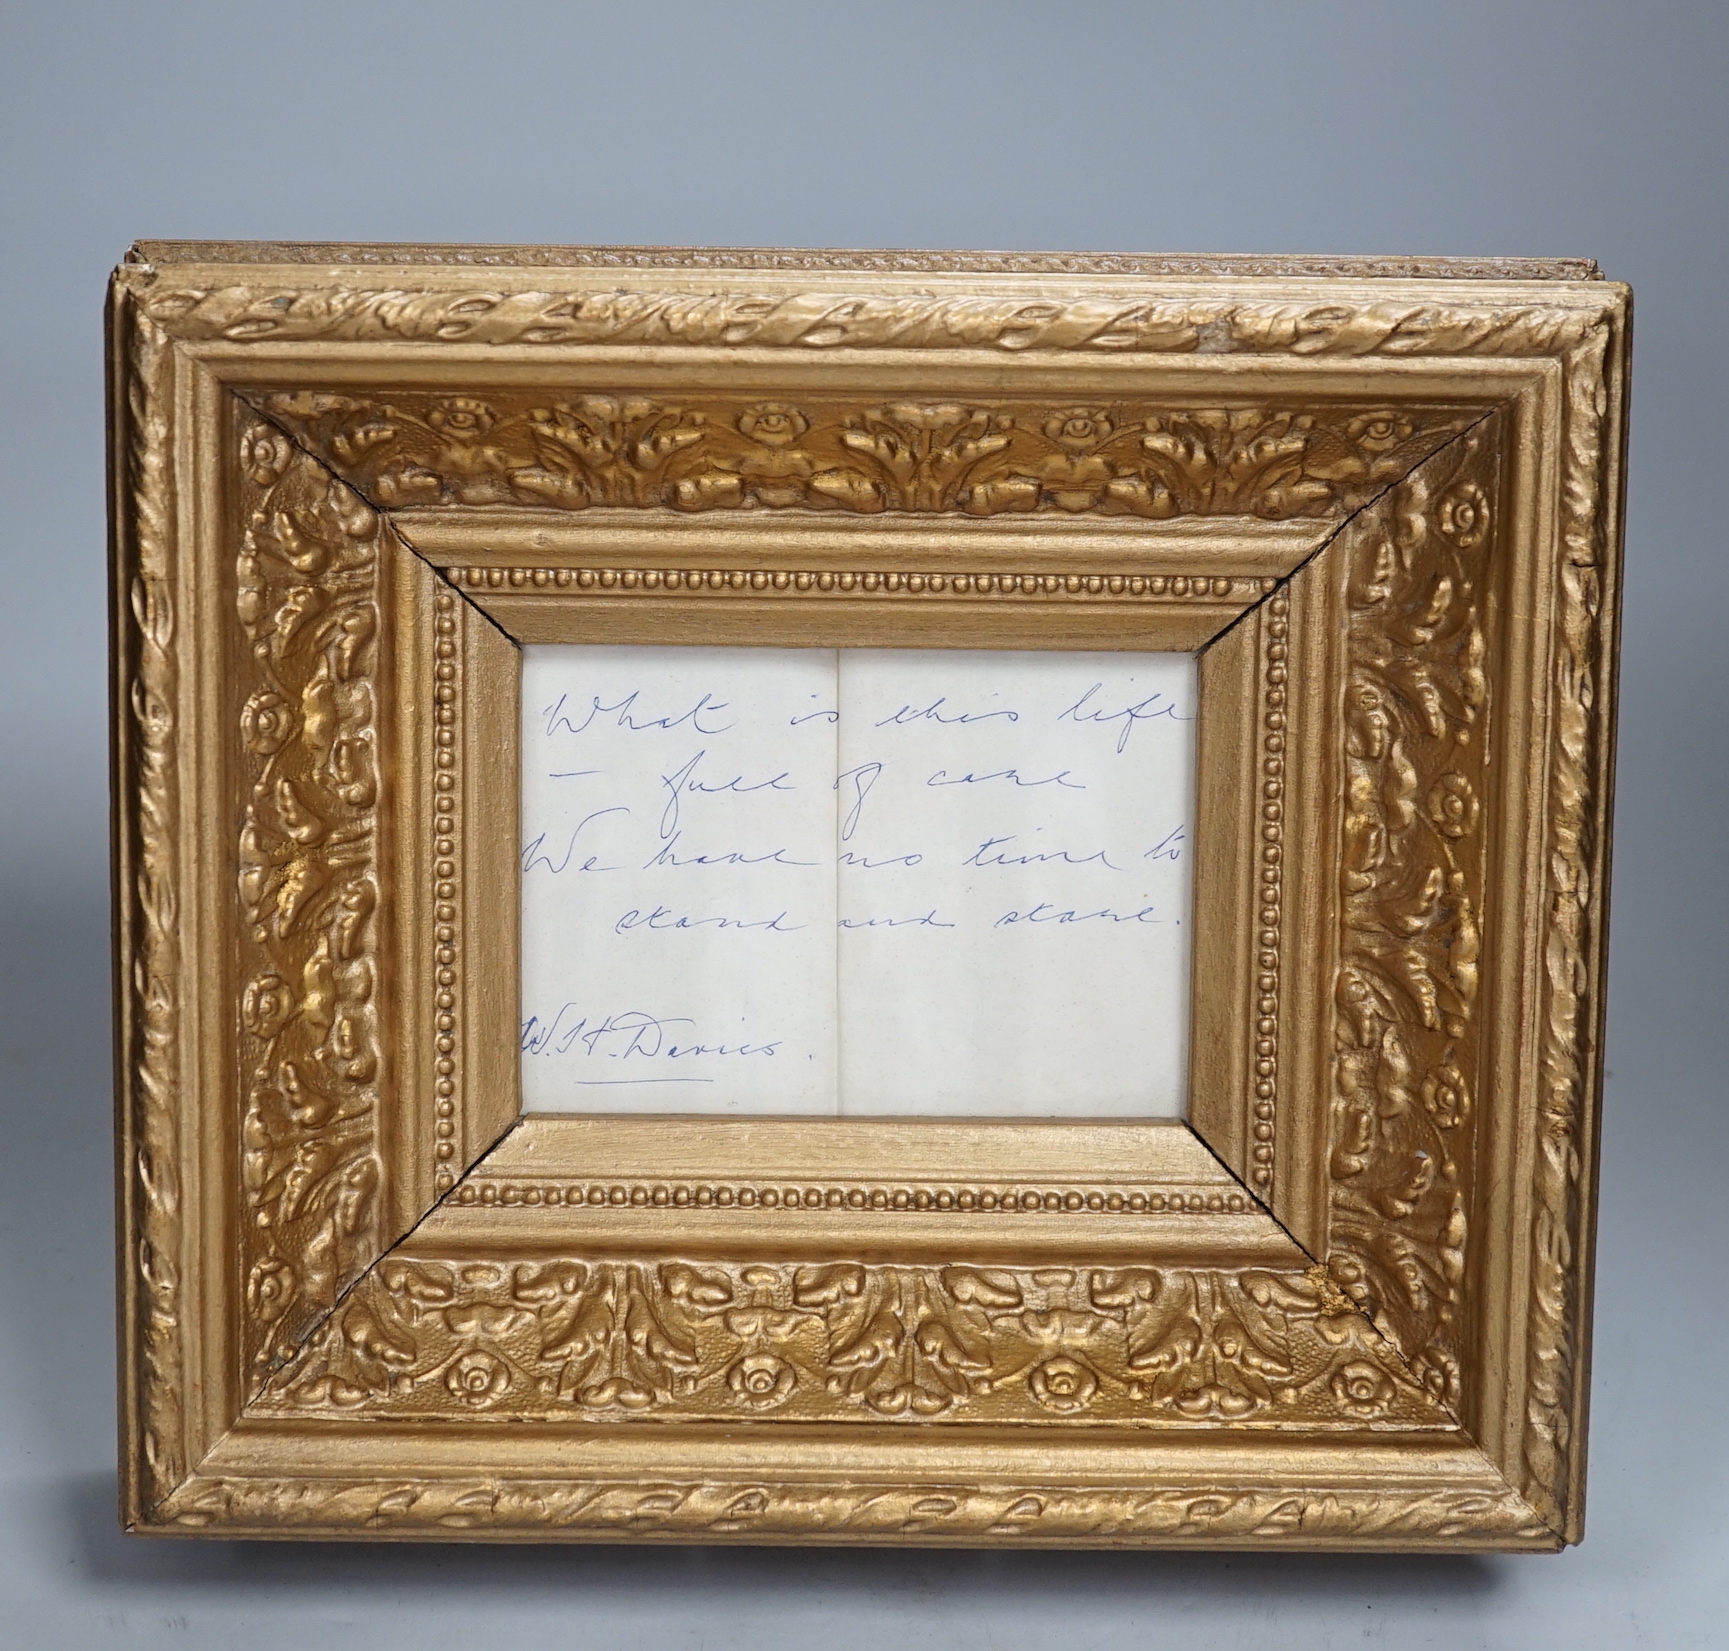 W.H. Davies, (Welsh poet), inscribed and signed verse, ornate gilt framed